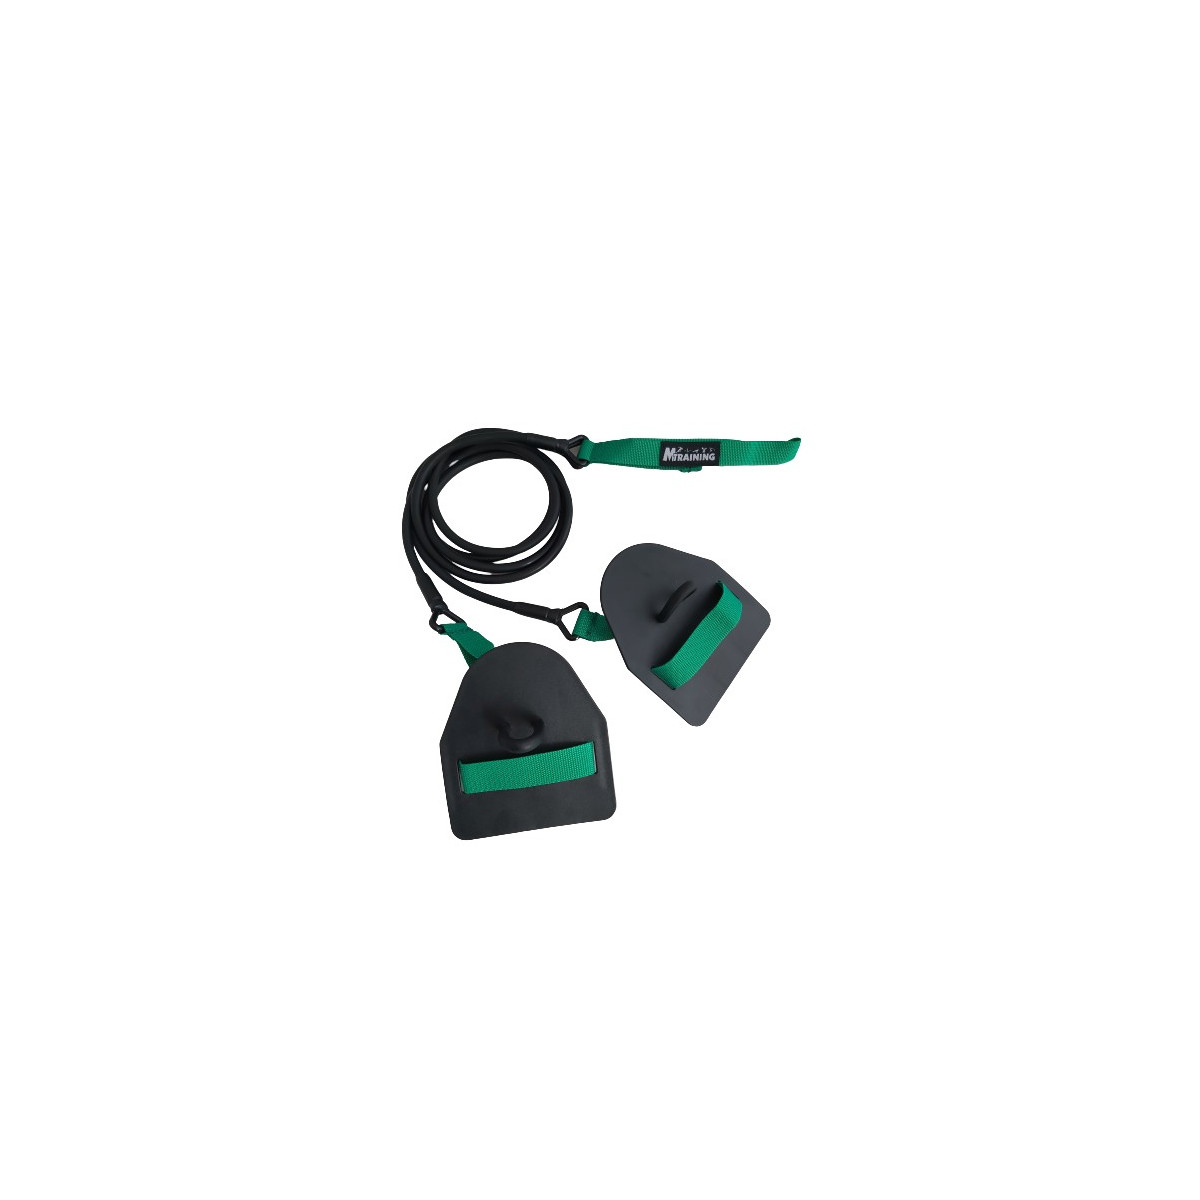 Elastique double avec paddles - Résistance légère (vert)